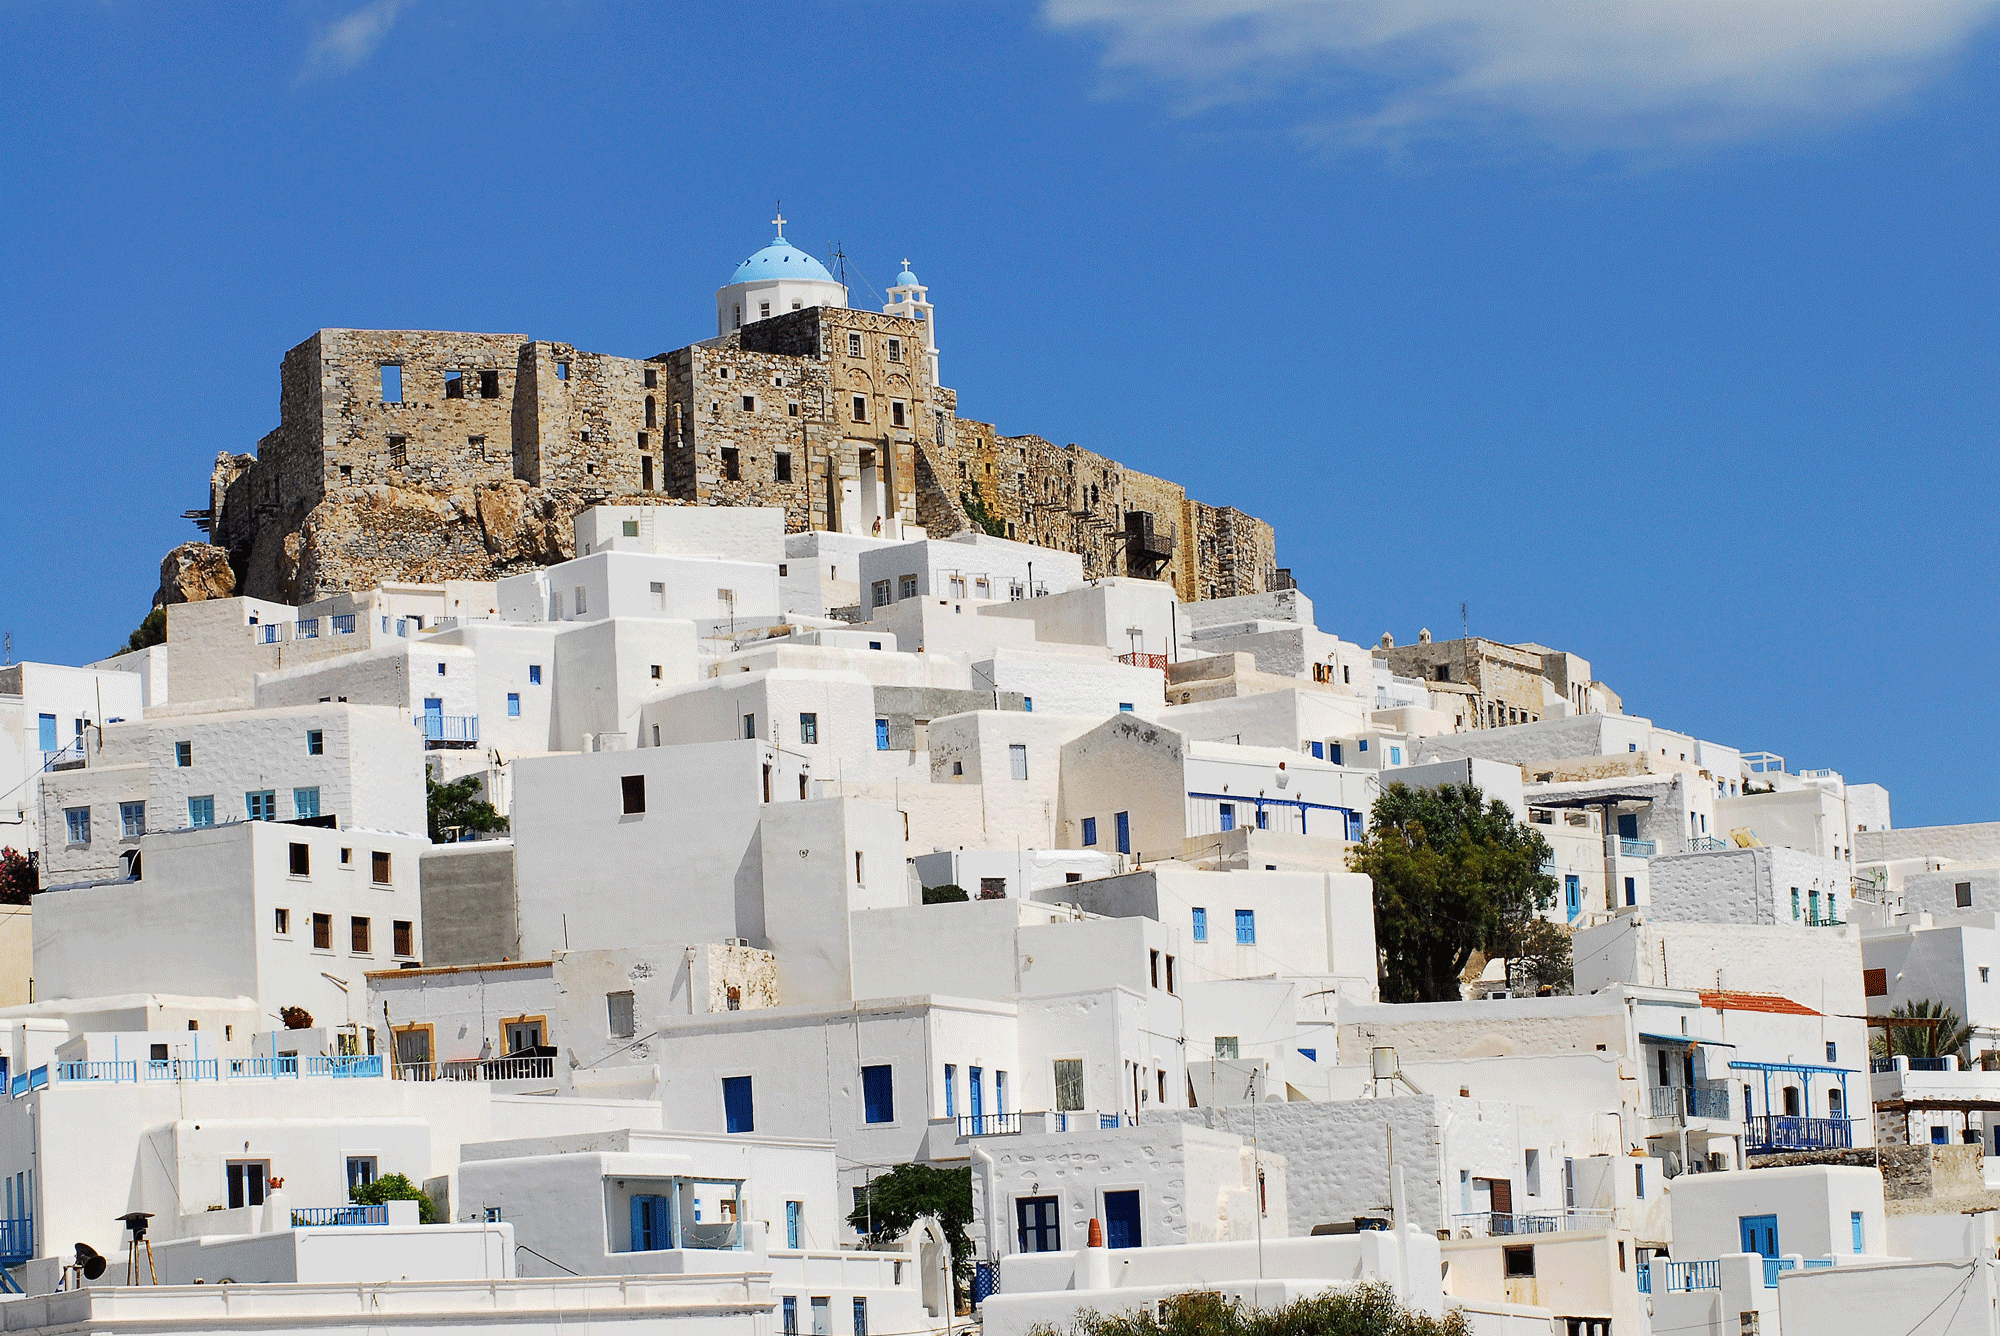 The Castle of Astypalea